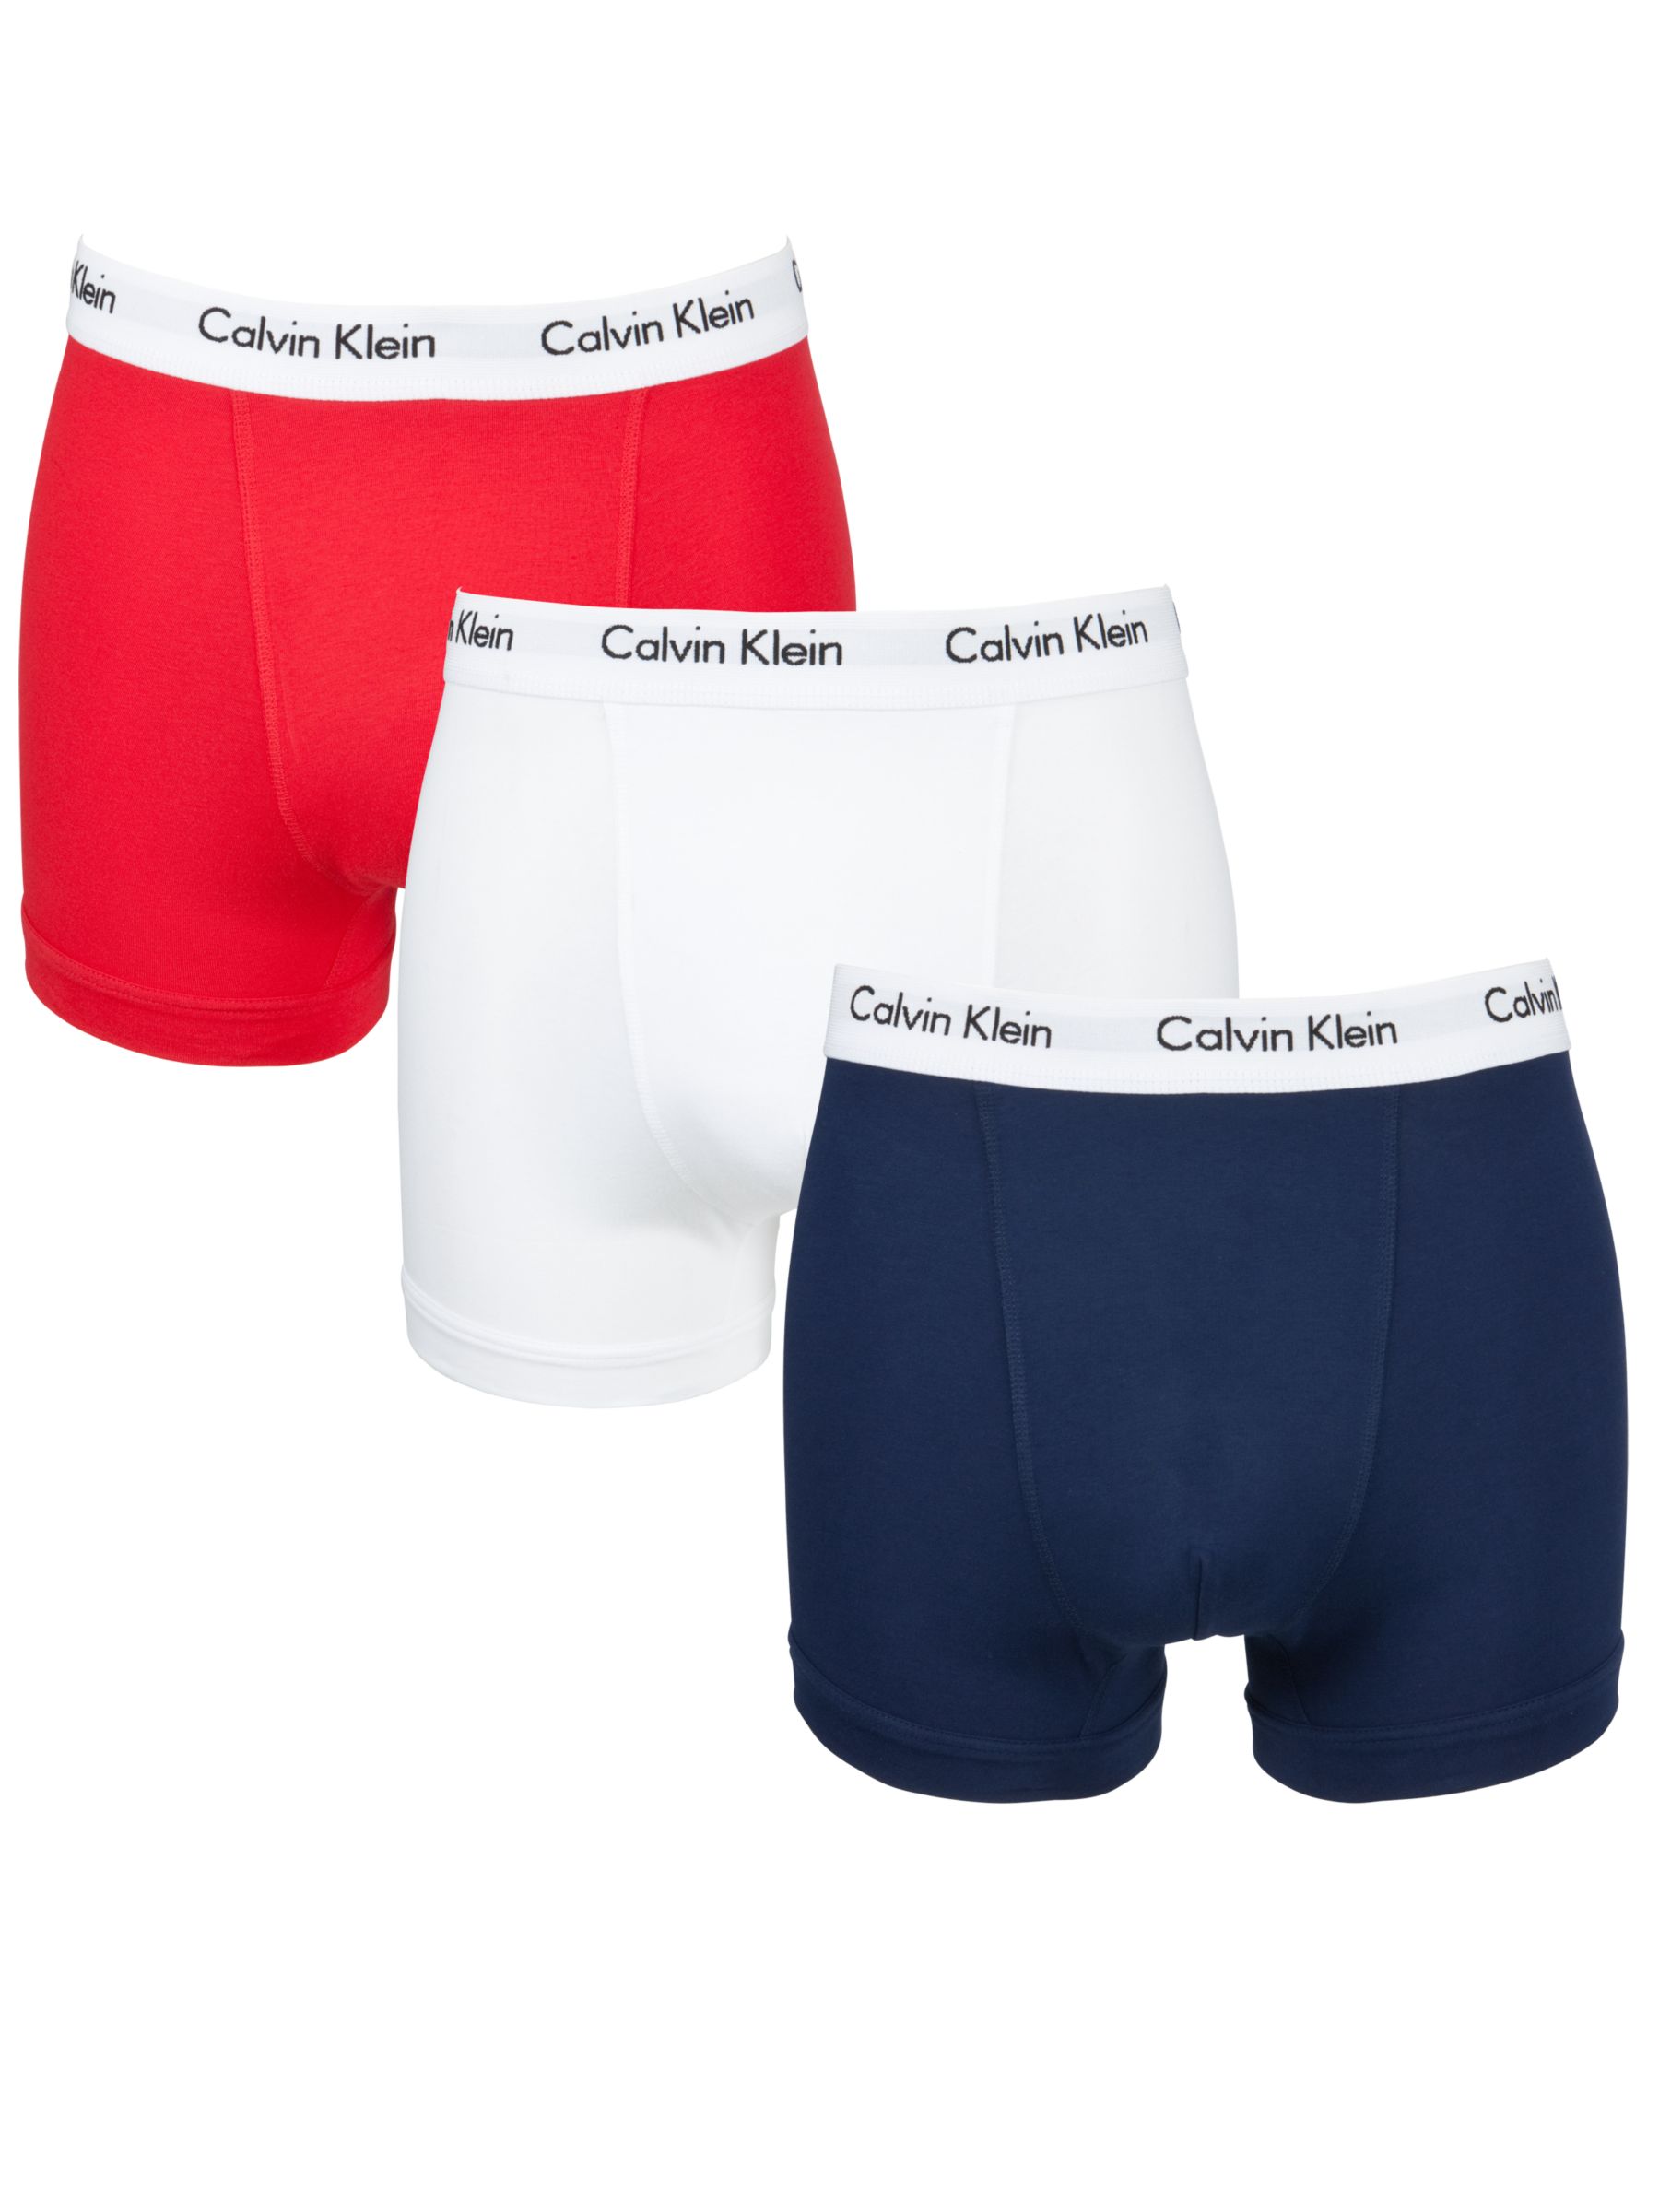 red calvin klein men's underwear